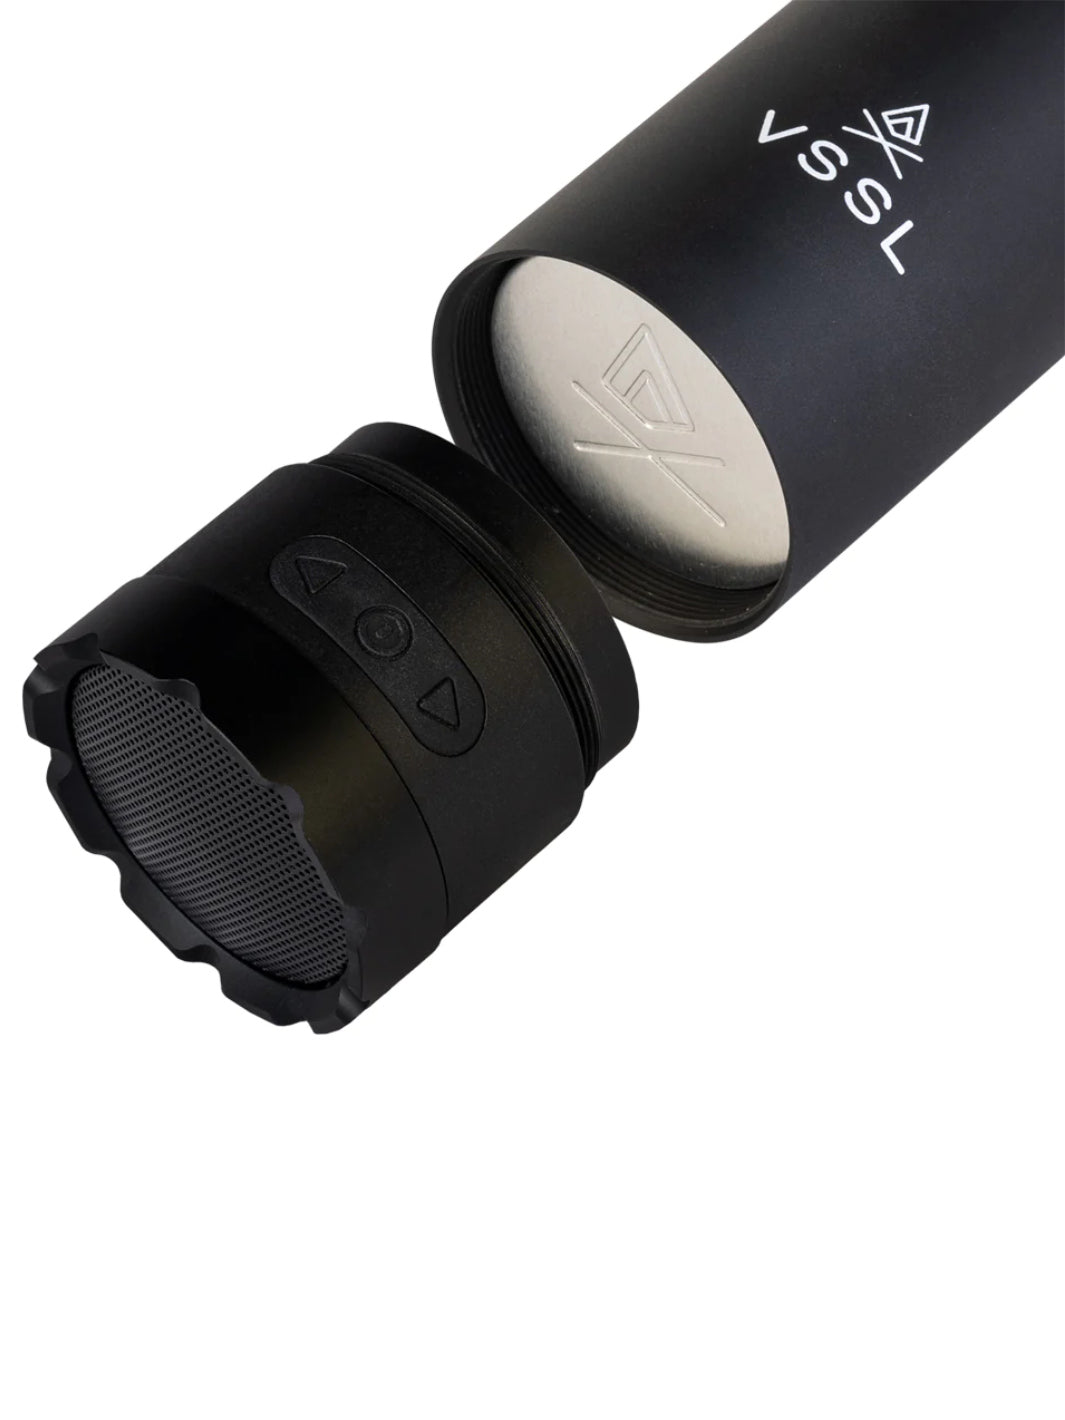 VSSL Mini Stash Speaker (Black)